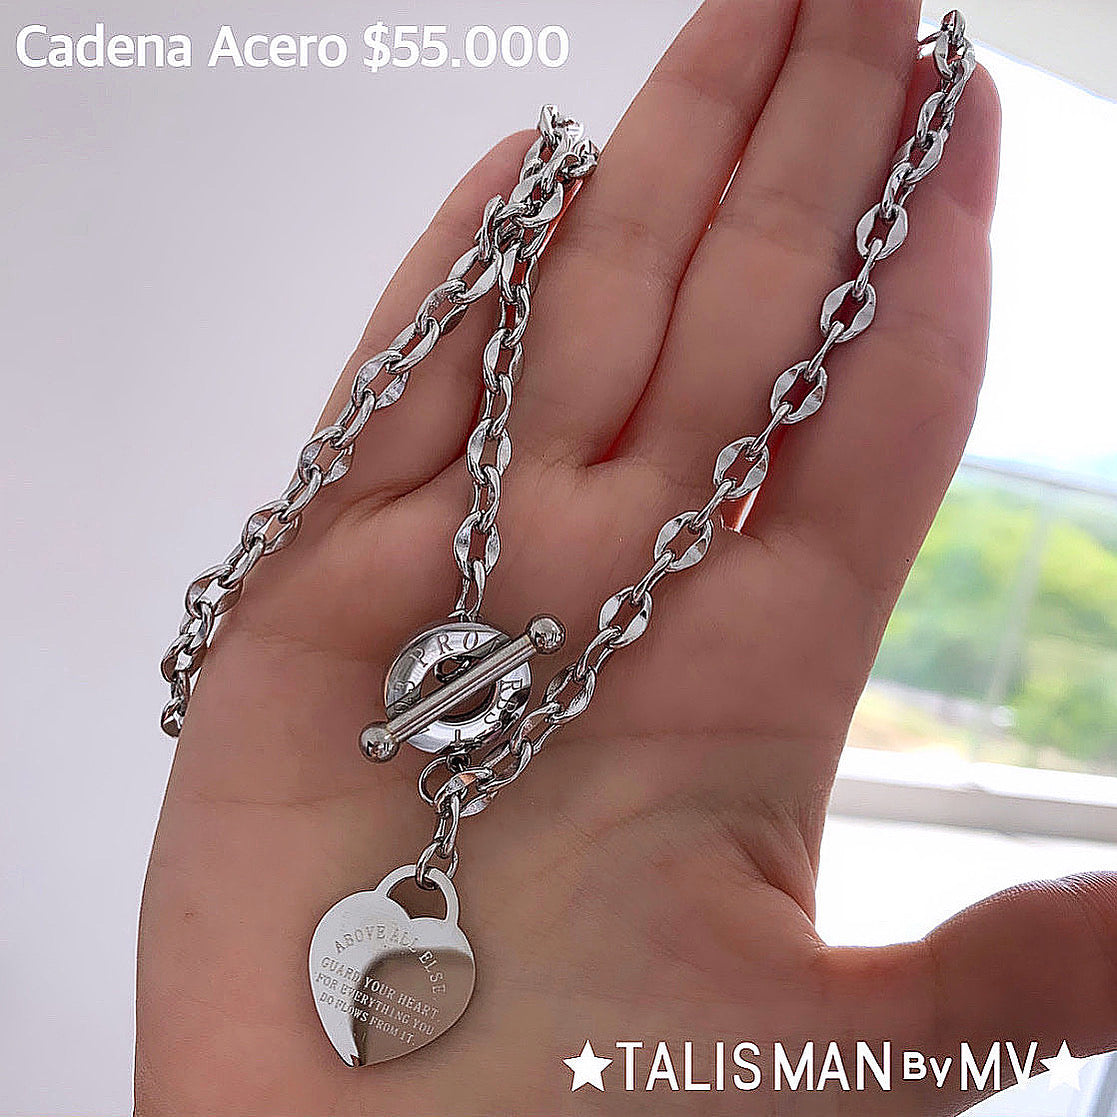 Cadena Acero inoxidable – Talisman by MV